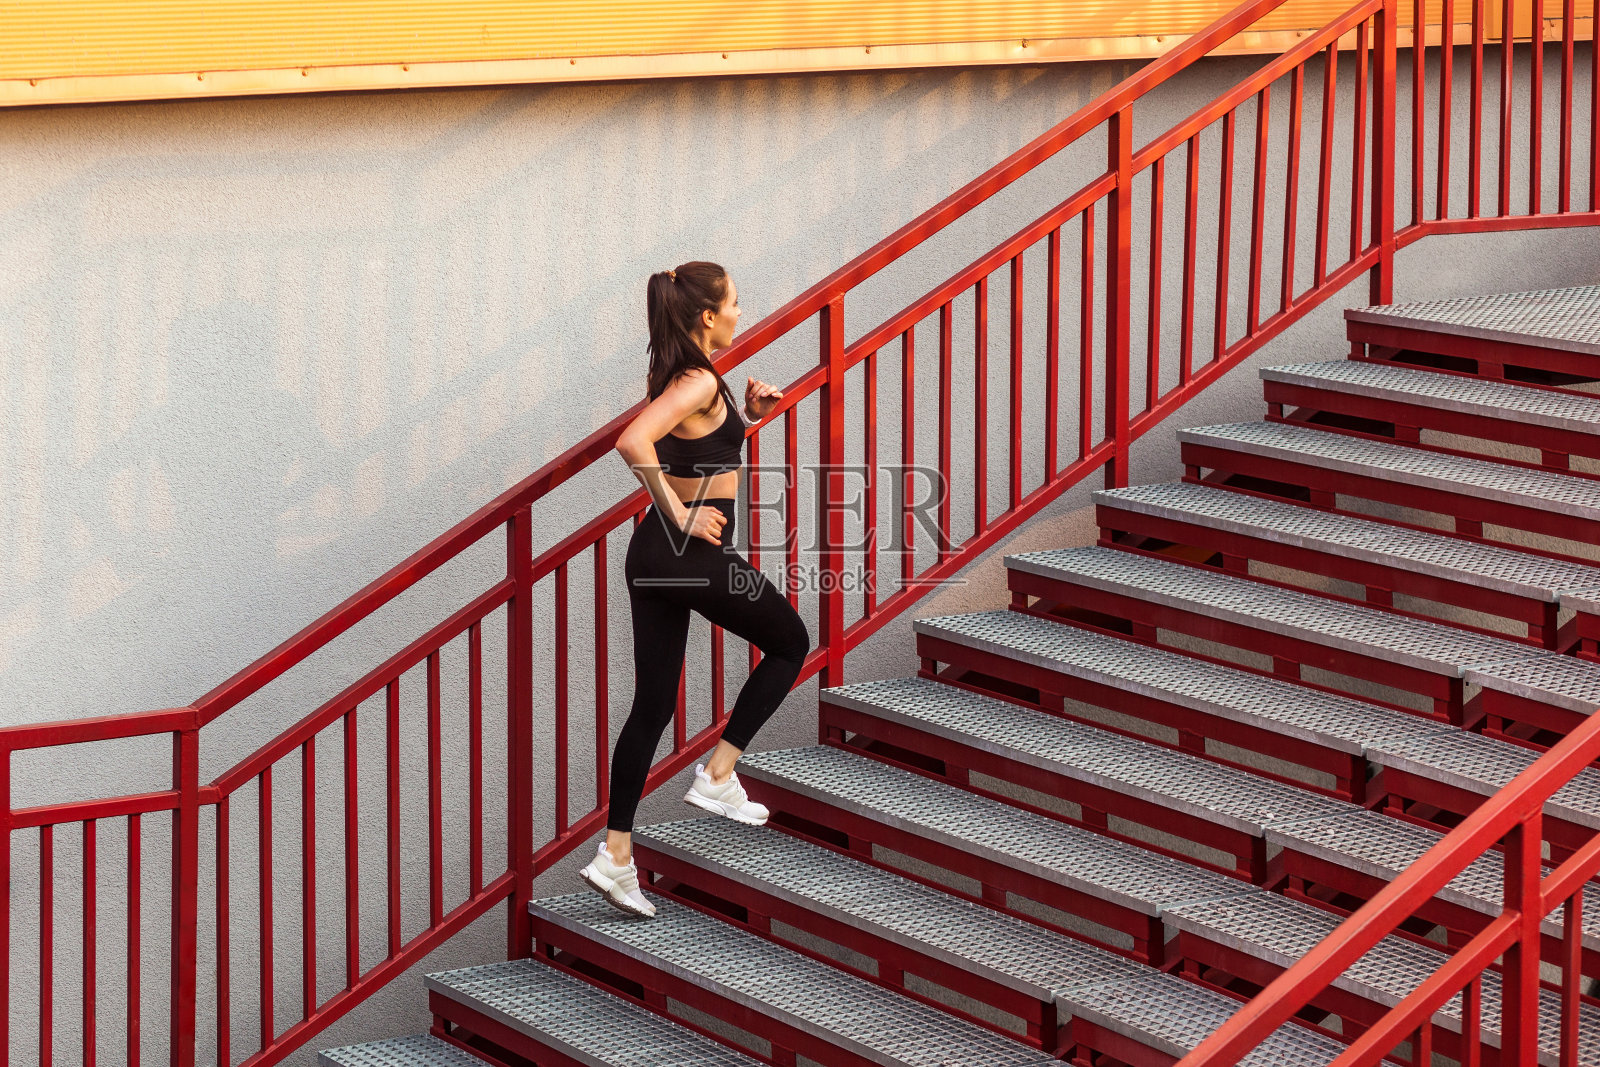 跑步运动员，身材苗条的黑发女孩穿着黑色运动服，紧身裤和上衣，跑上楼梯做有氧运动照片摄影图片